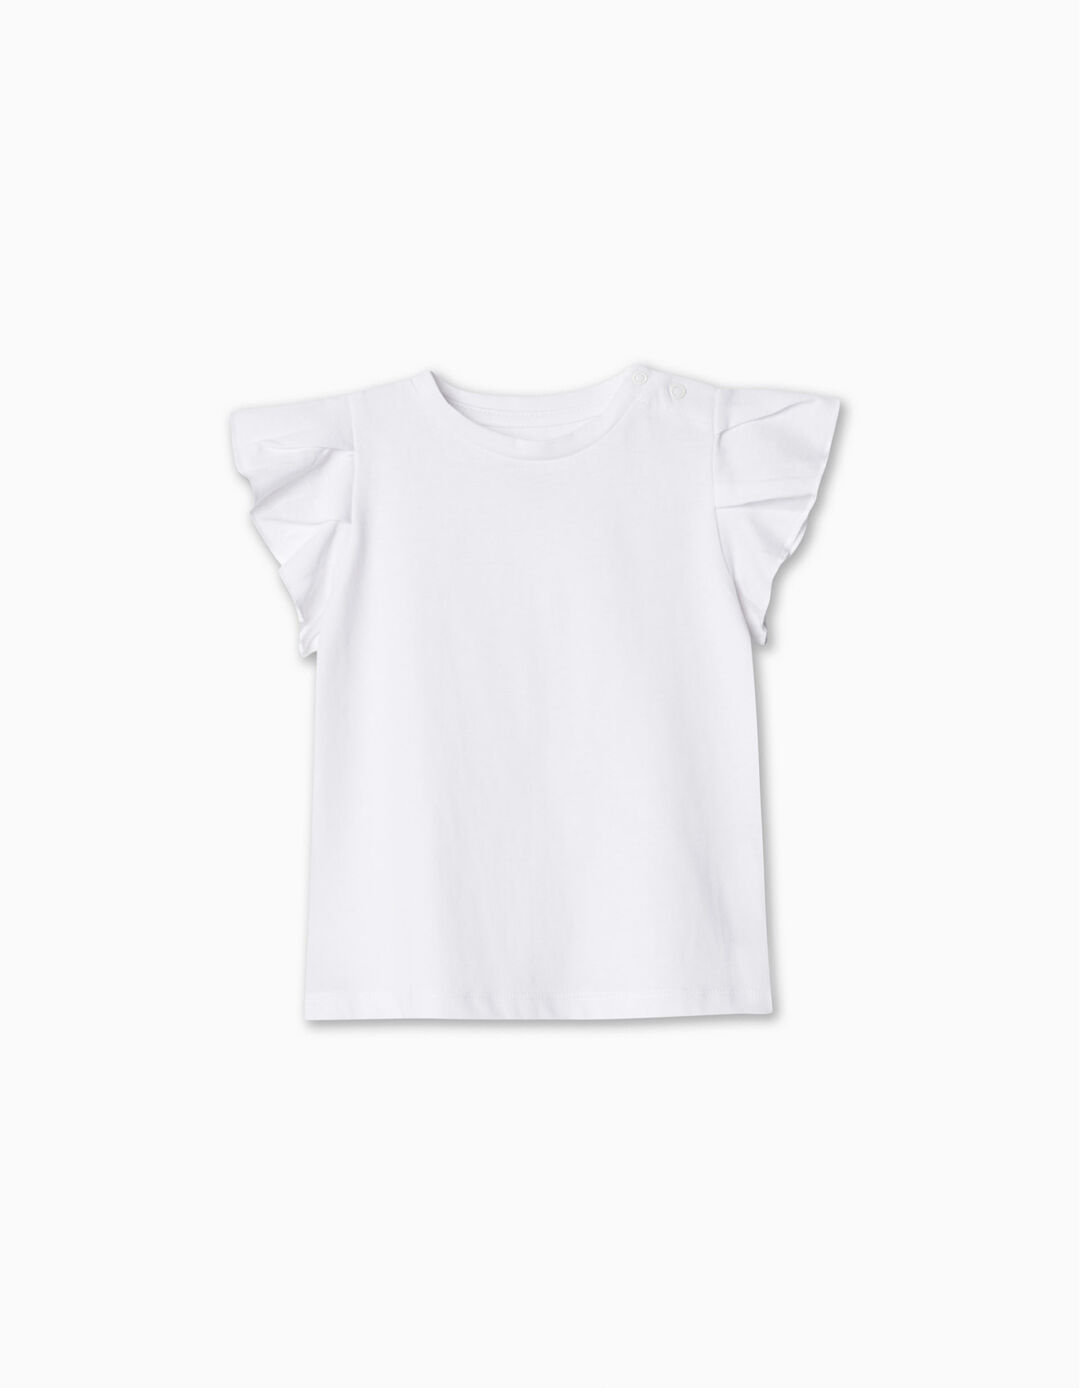 T-shirt Folhos, Bebé Menina, Branco